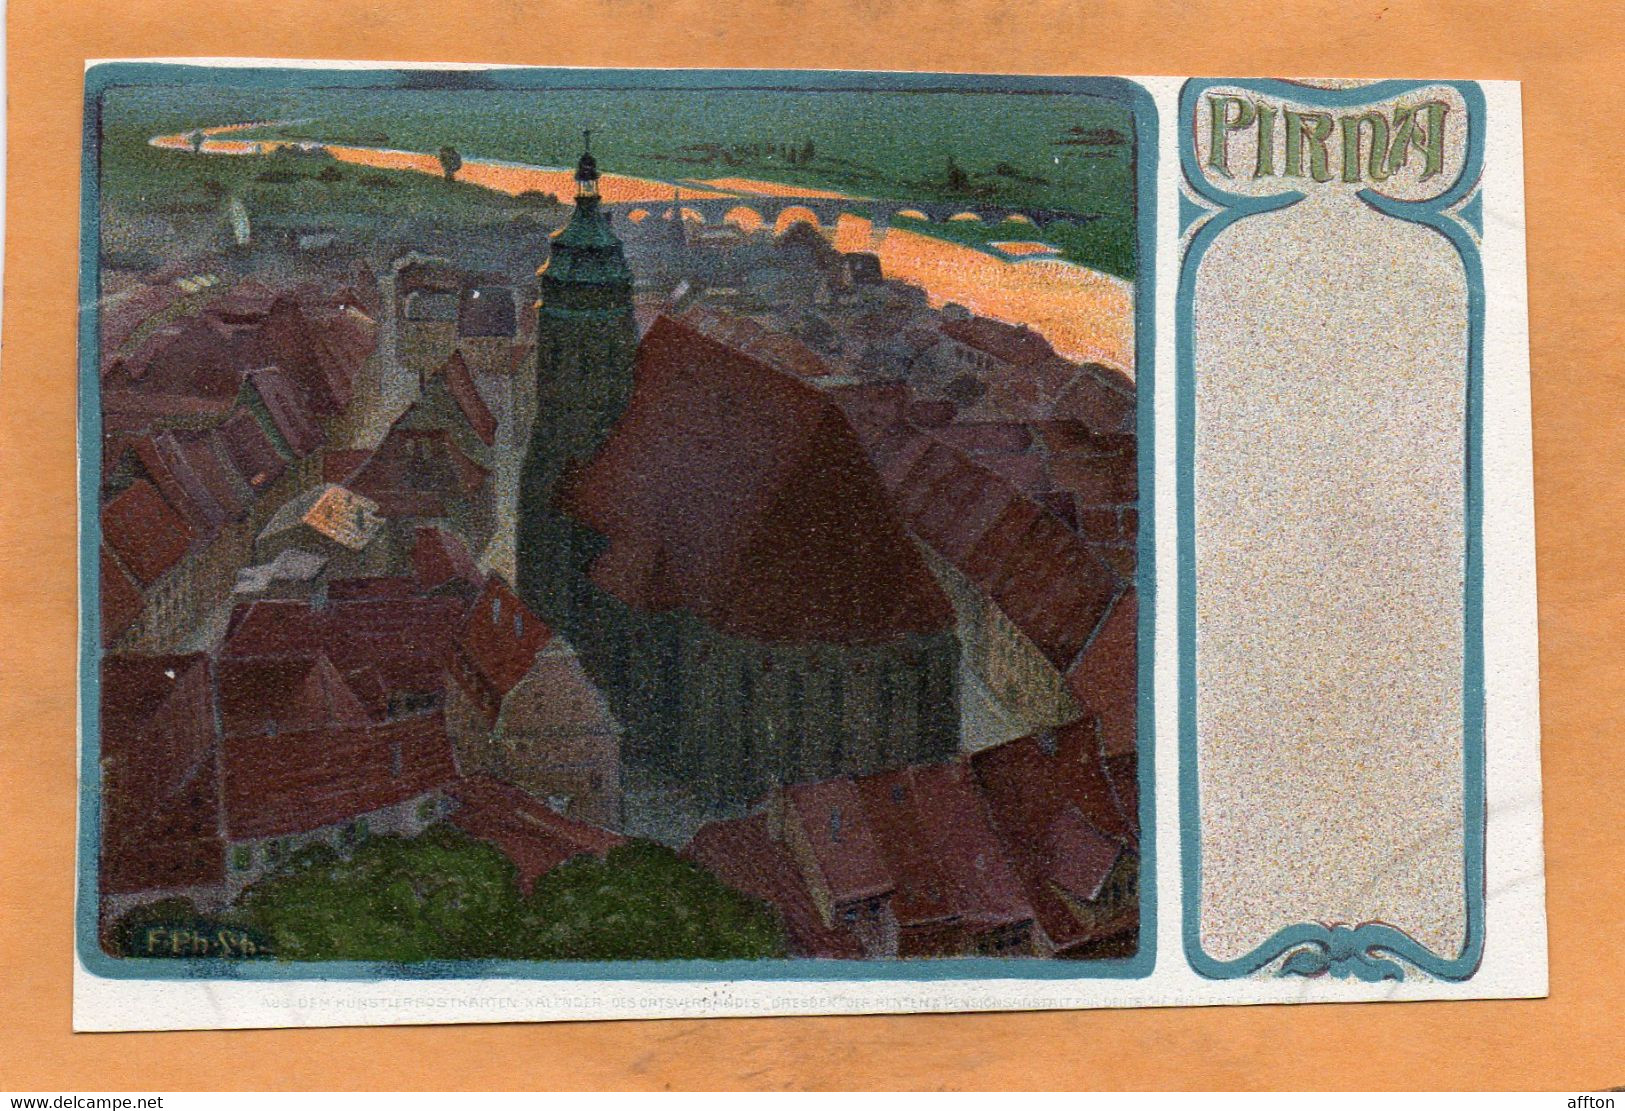 Pirna Saxony Germany 1900 Postcard - Pirna